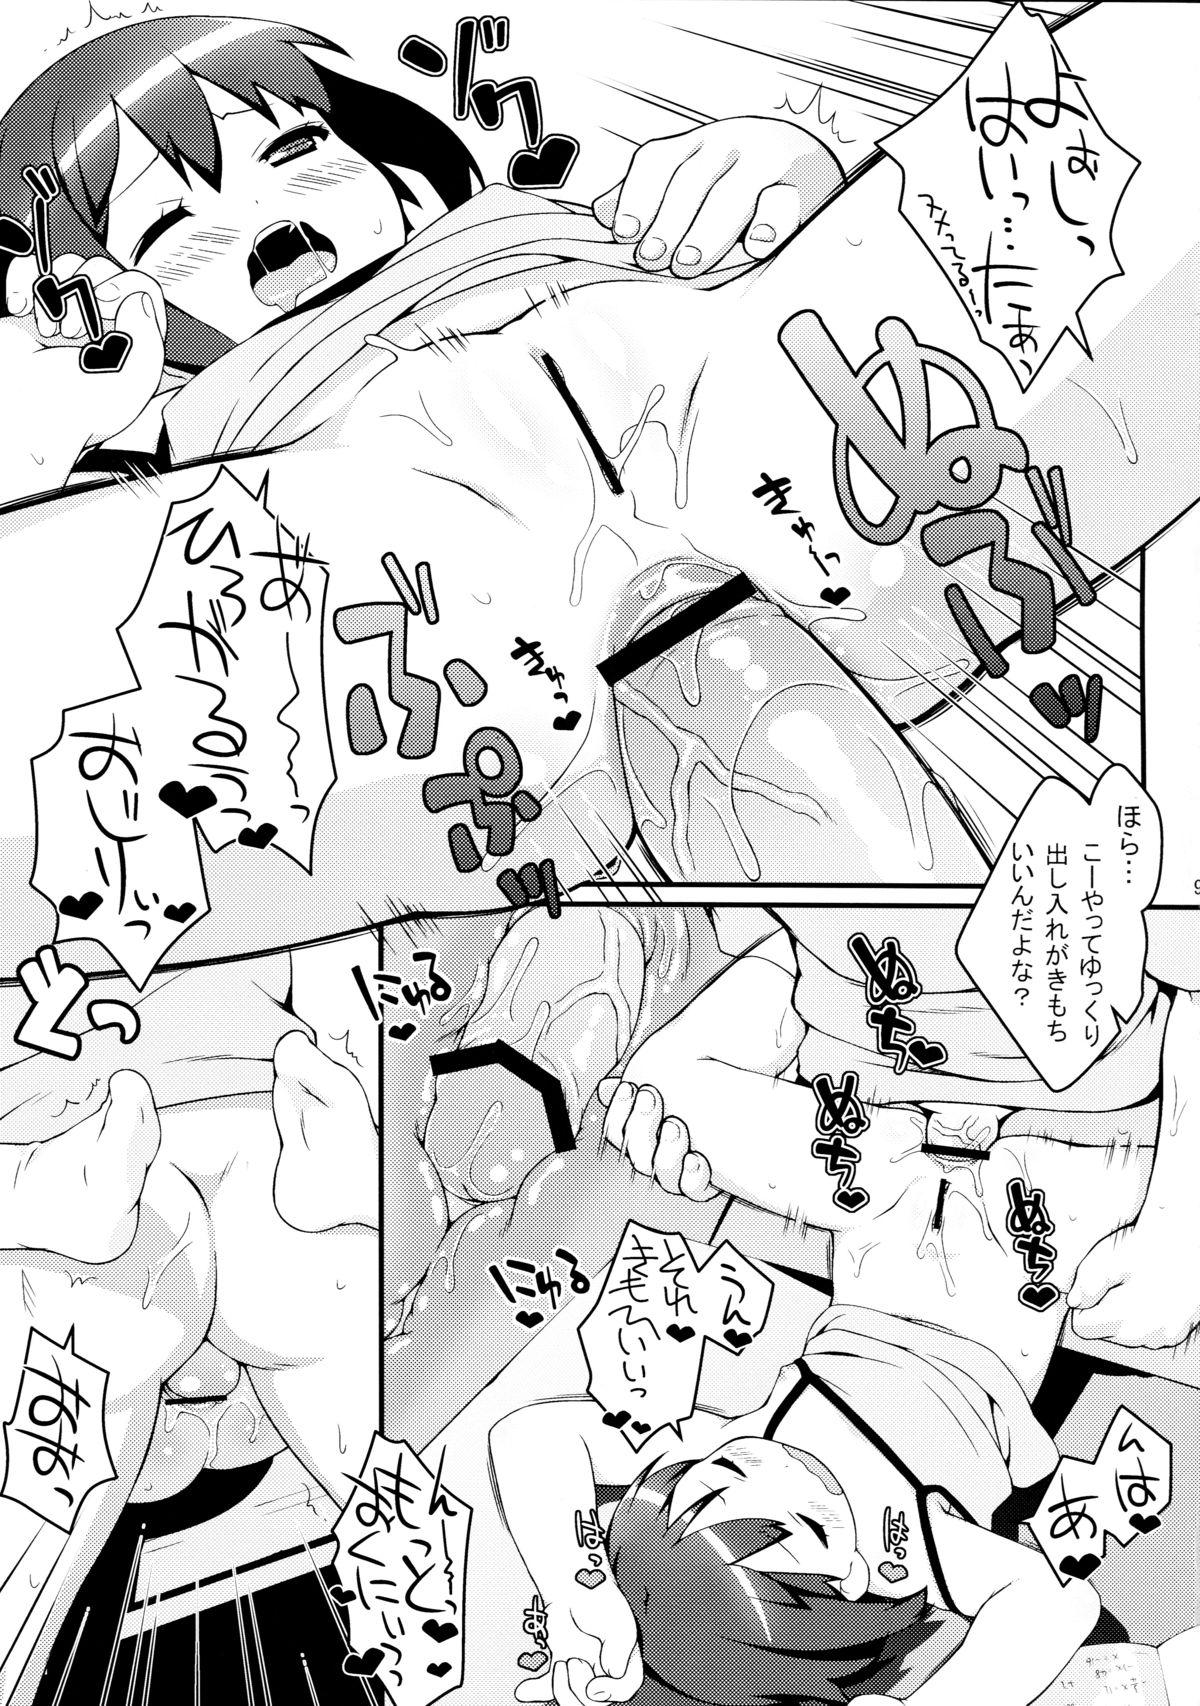 Farting Imouto ni mo Koi ga Shitai - Chuunibyou demo koi ga shitai Culo - Page 9